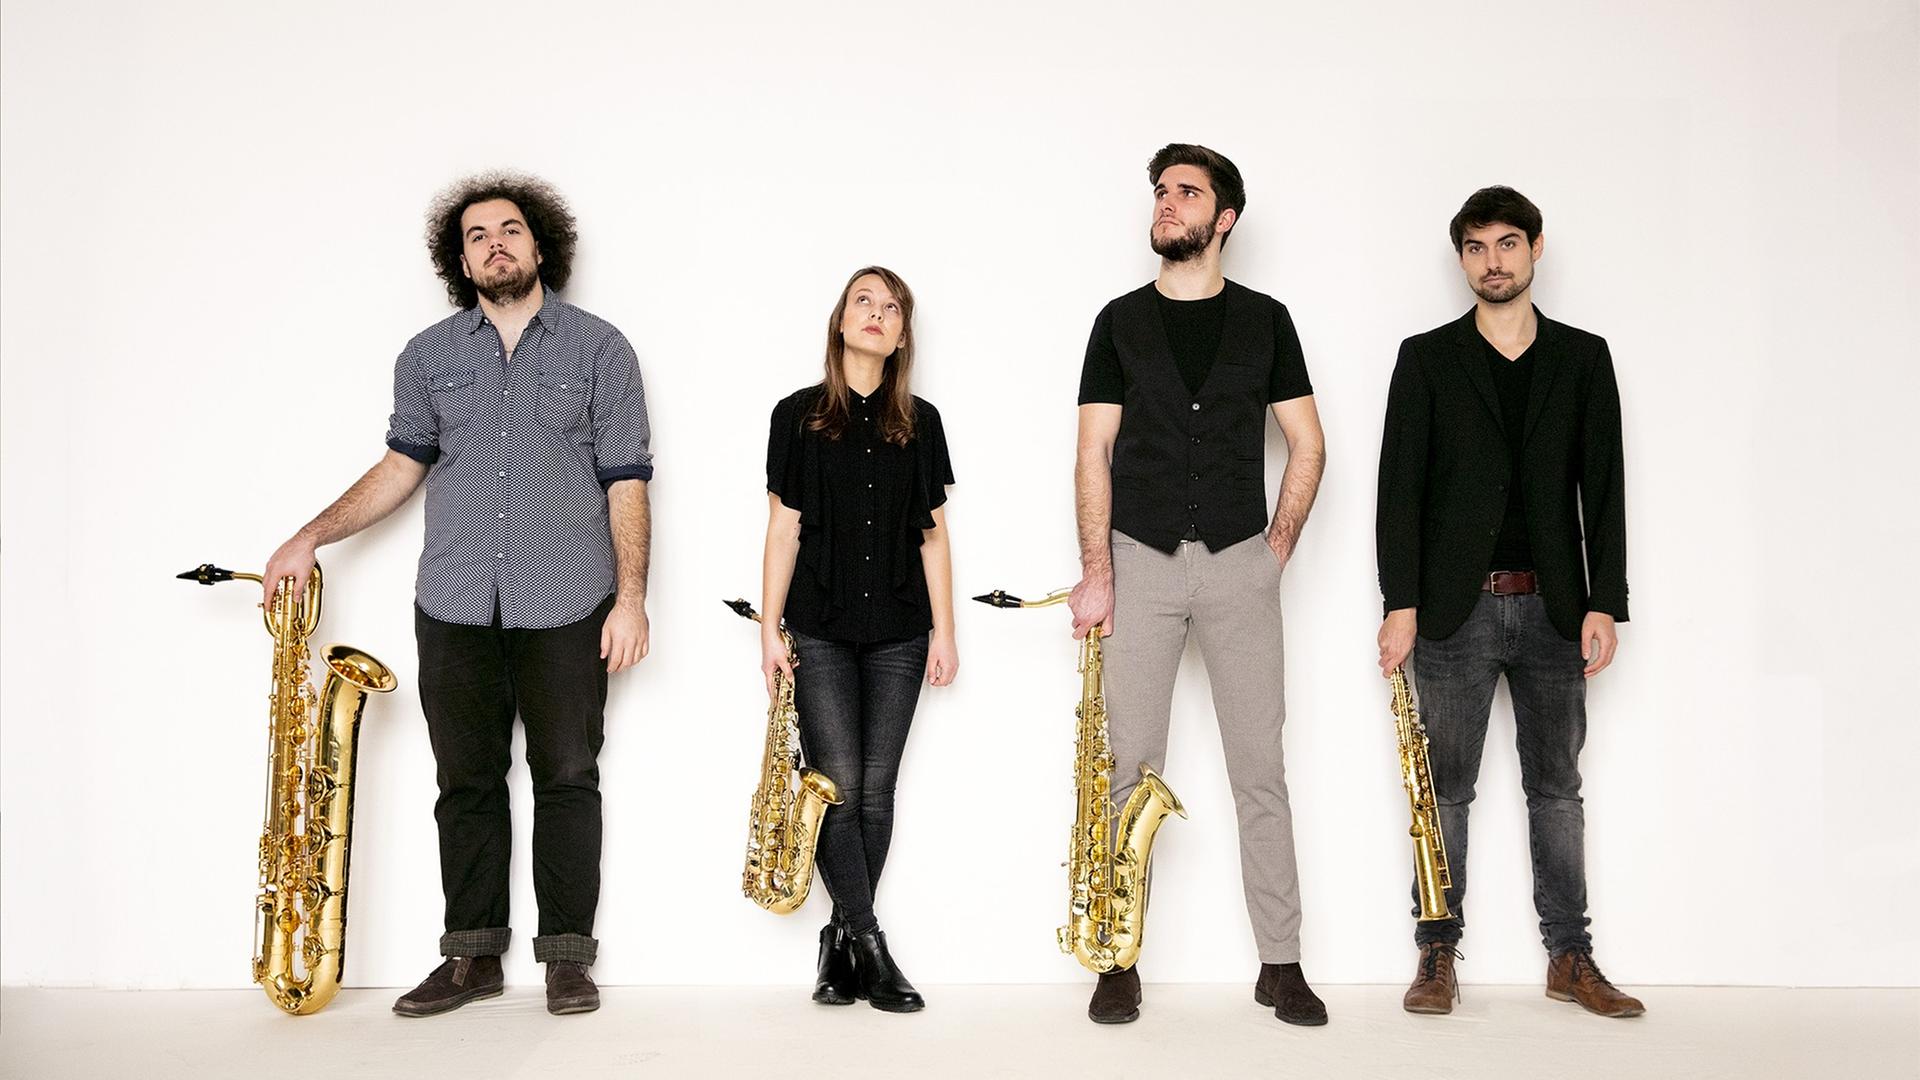 Drei Männer und eine Frau stehen überwiegend dunkel gekleidet mit vier unterschiedlich großen Saxophonen in der Hand vor einer weißen Wand.